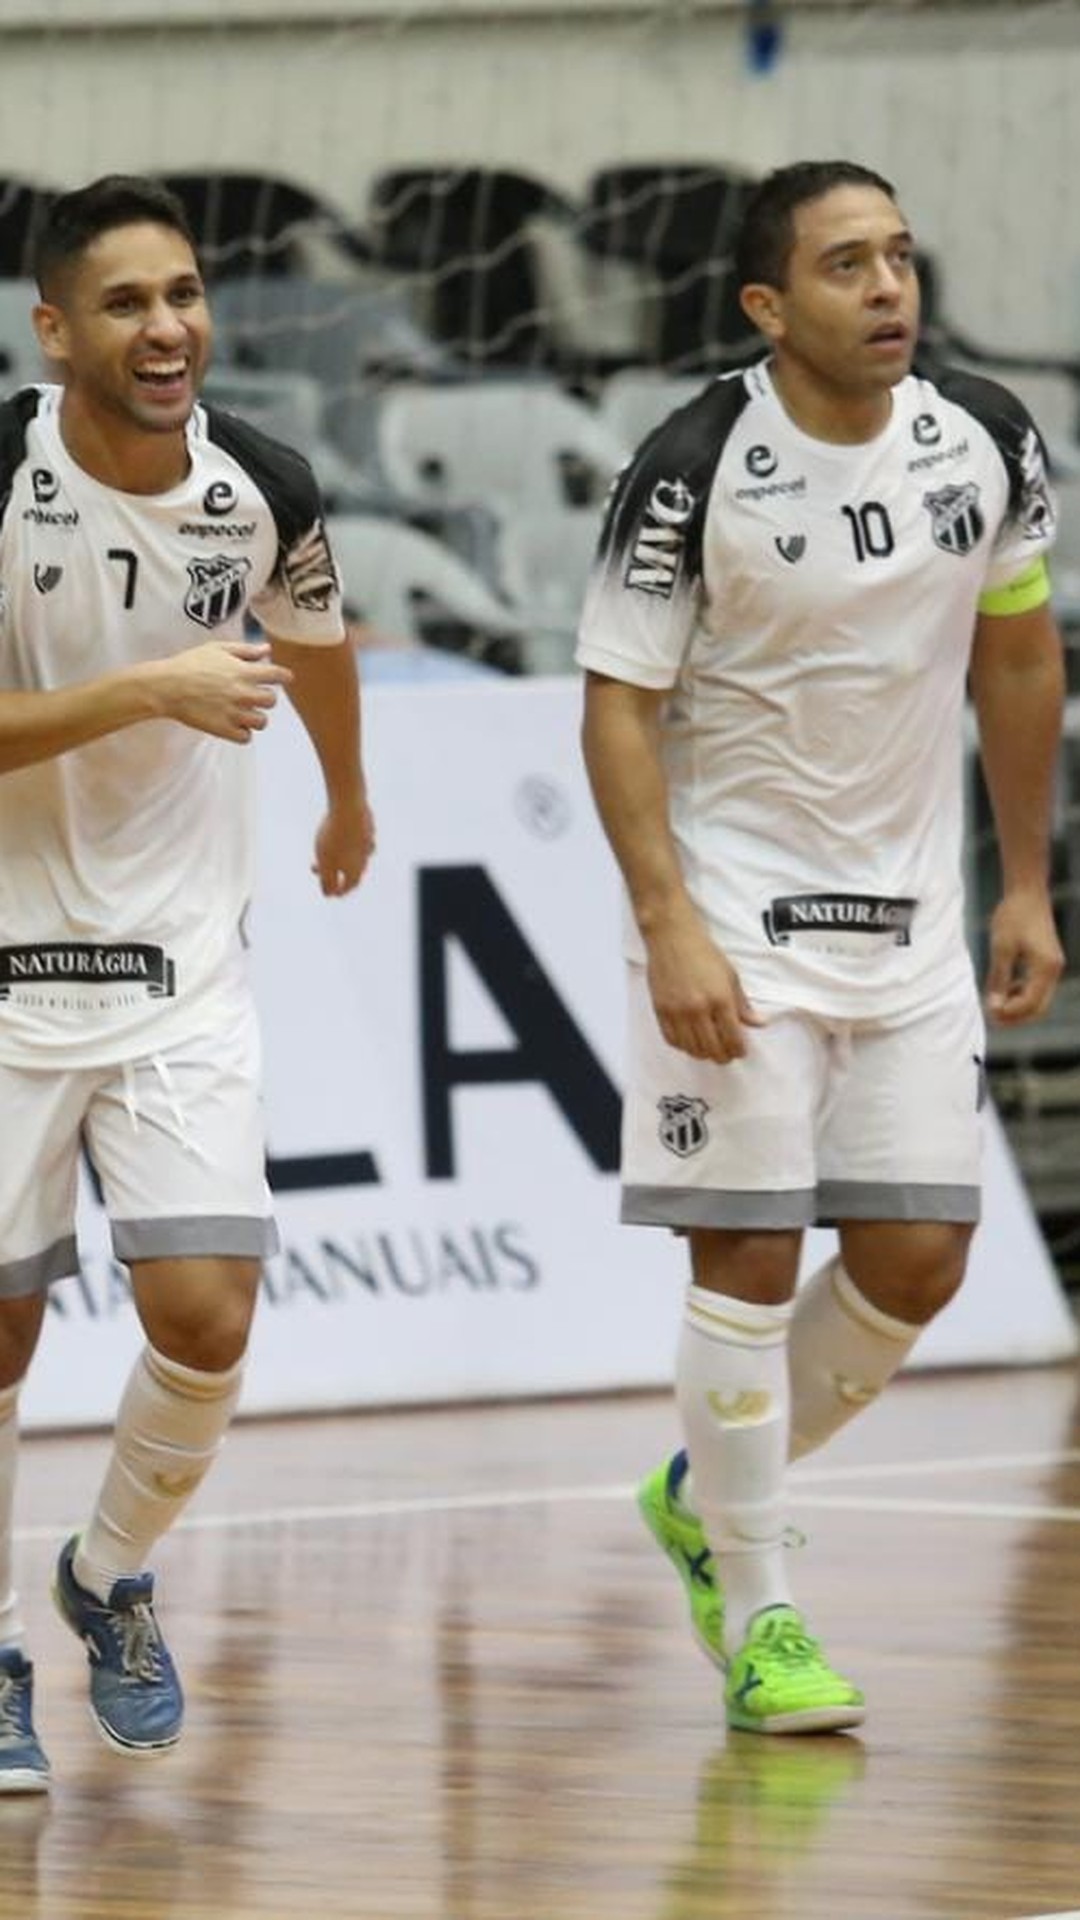 Ex-Jaraguá Futsal, Manoel Tobias completa 50 anos e diz: “Sou o